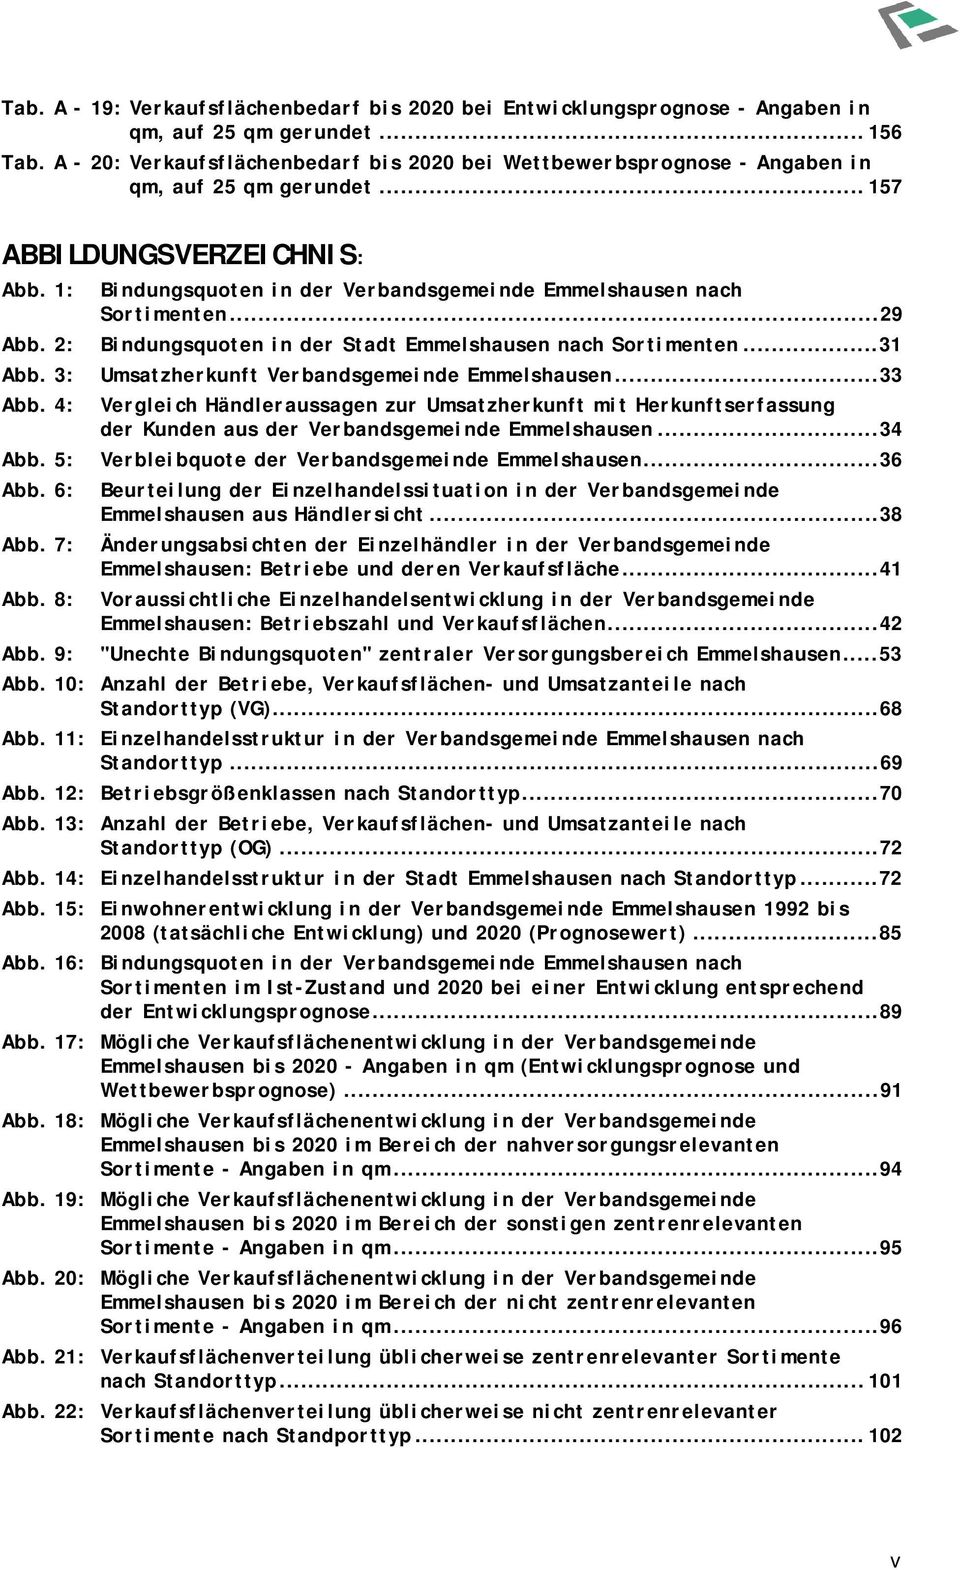 9: Bindungsquoten in der Verbandsgemeinde Emmelshausen nach Sortimenten...29 Bindungsquoten in der Stadt Emmelshausen nach Sortimenten...31 Umsatzherkunft Verbandsgemeinde Emmelshausen.